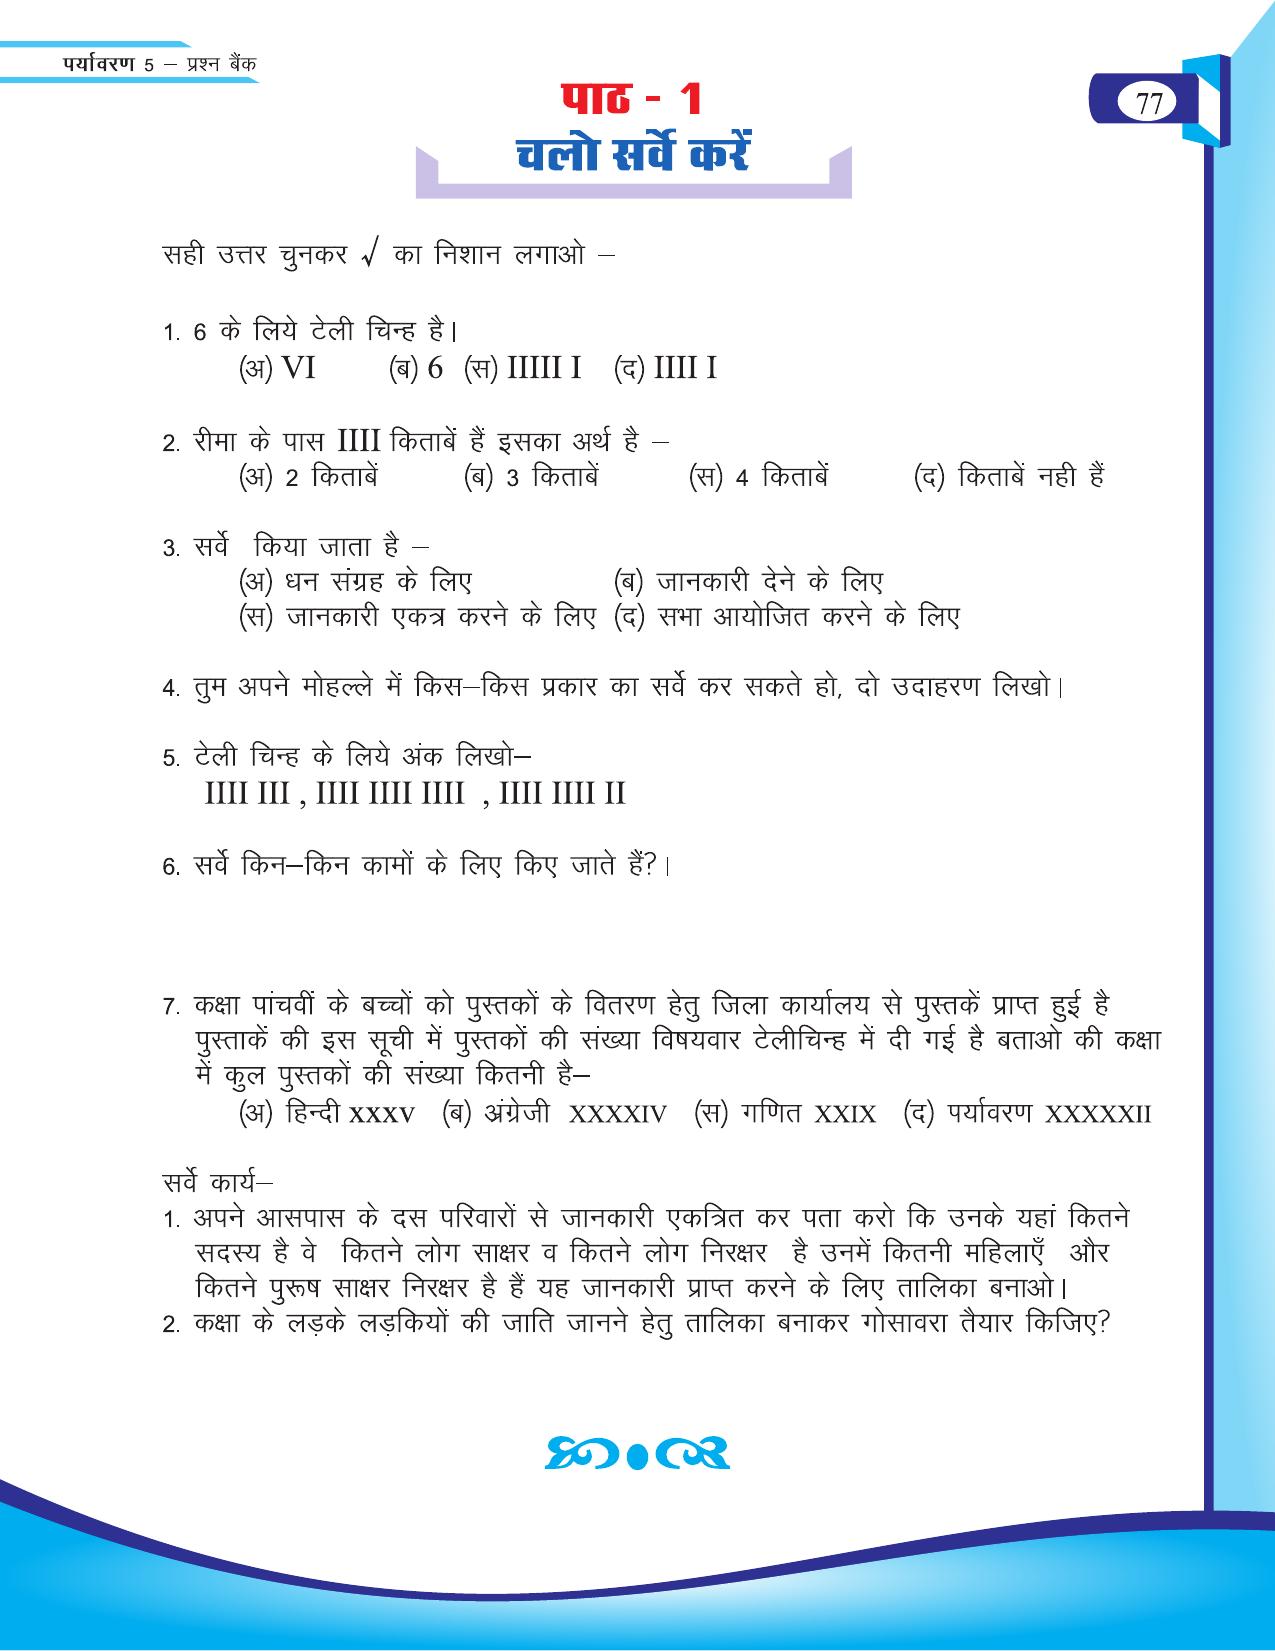 Chhattisgarh Board Class 5 EVS Question Bank 2015-16 - Page 3